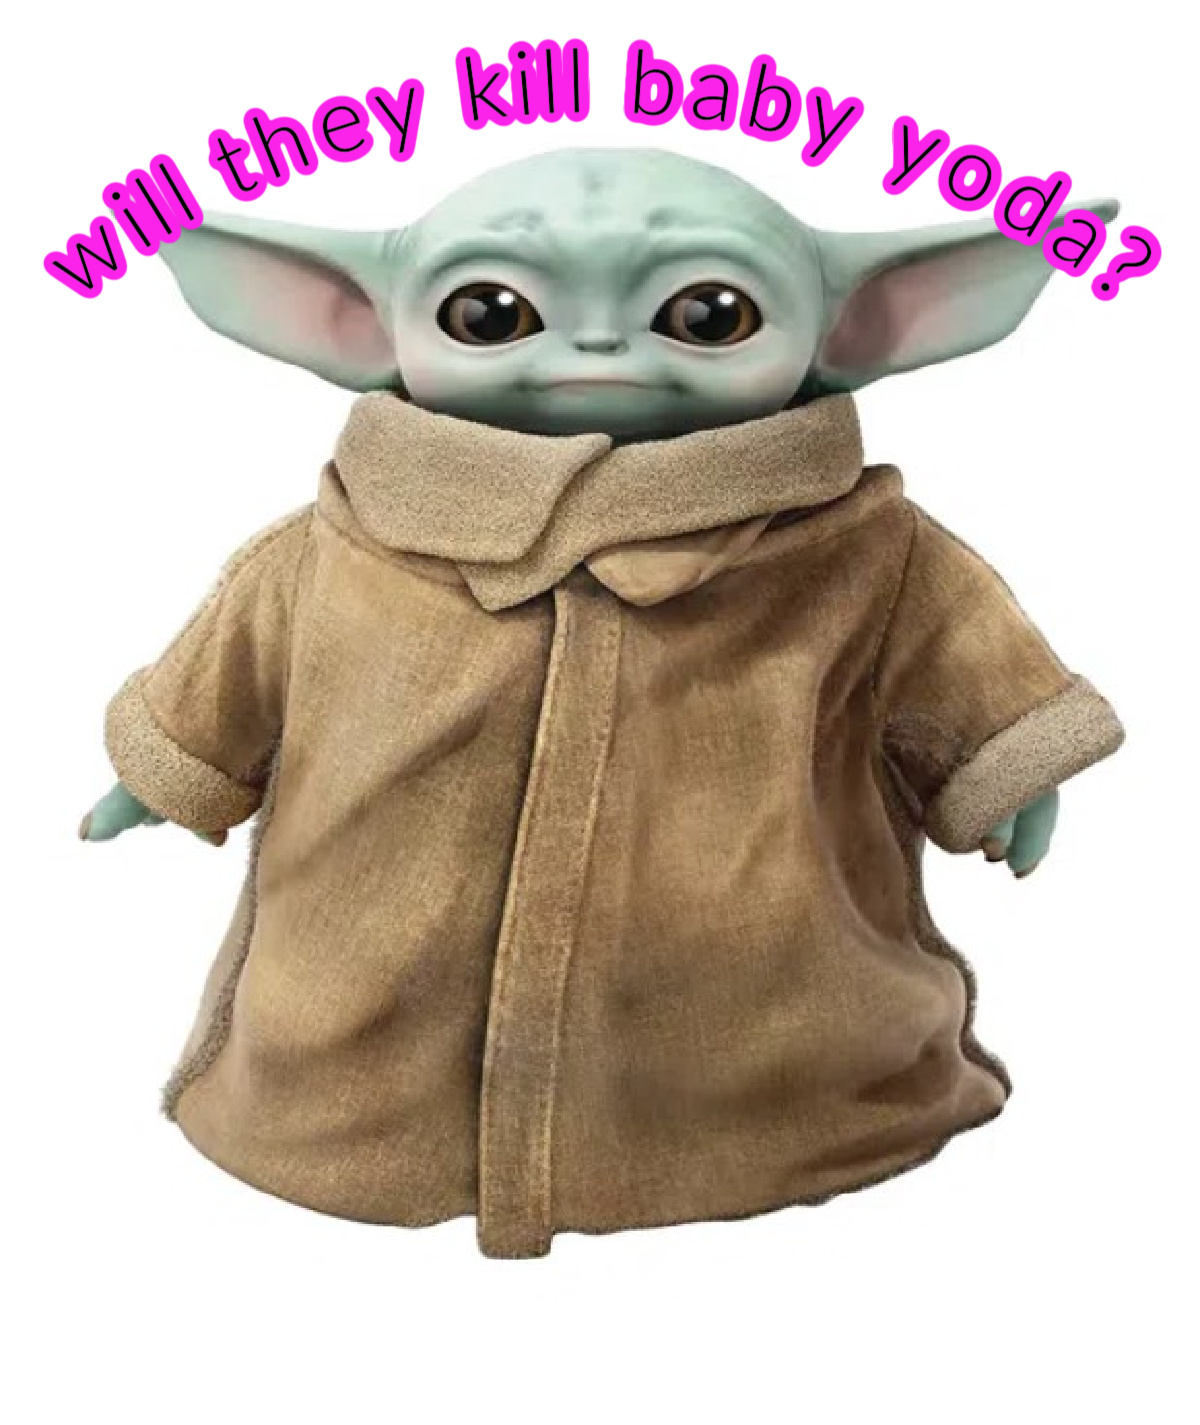 Will they kill baby Yoda?